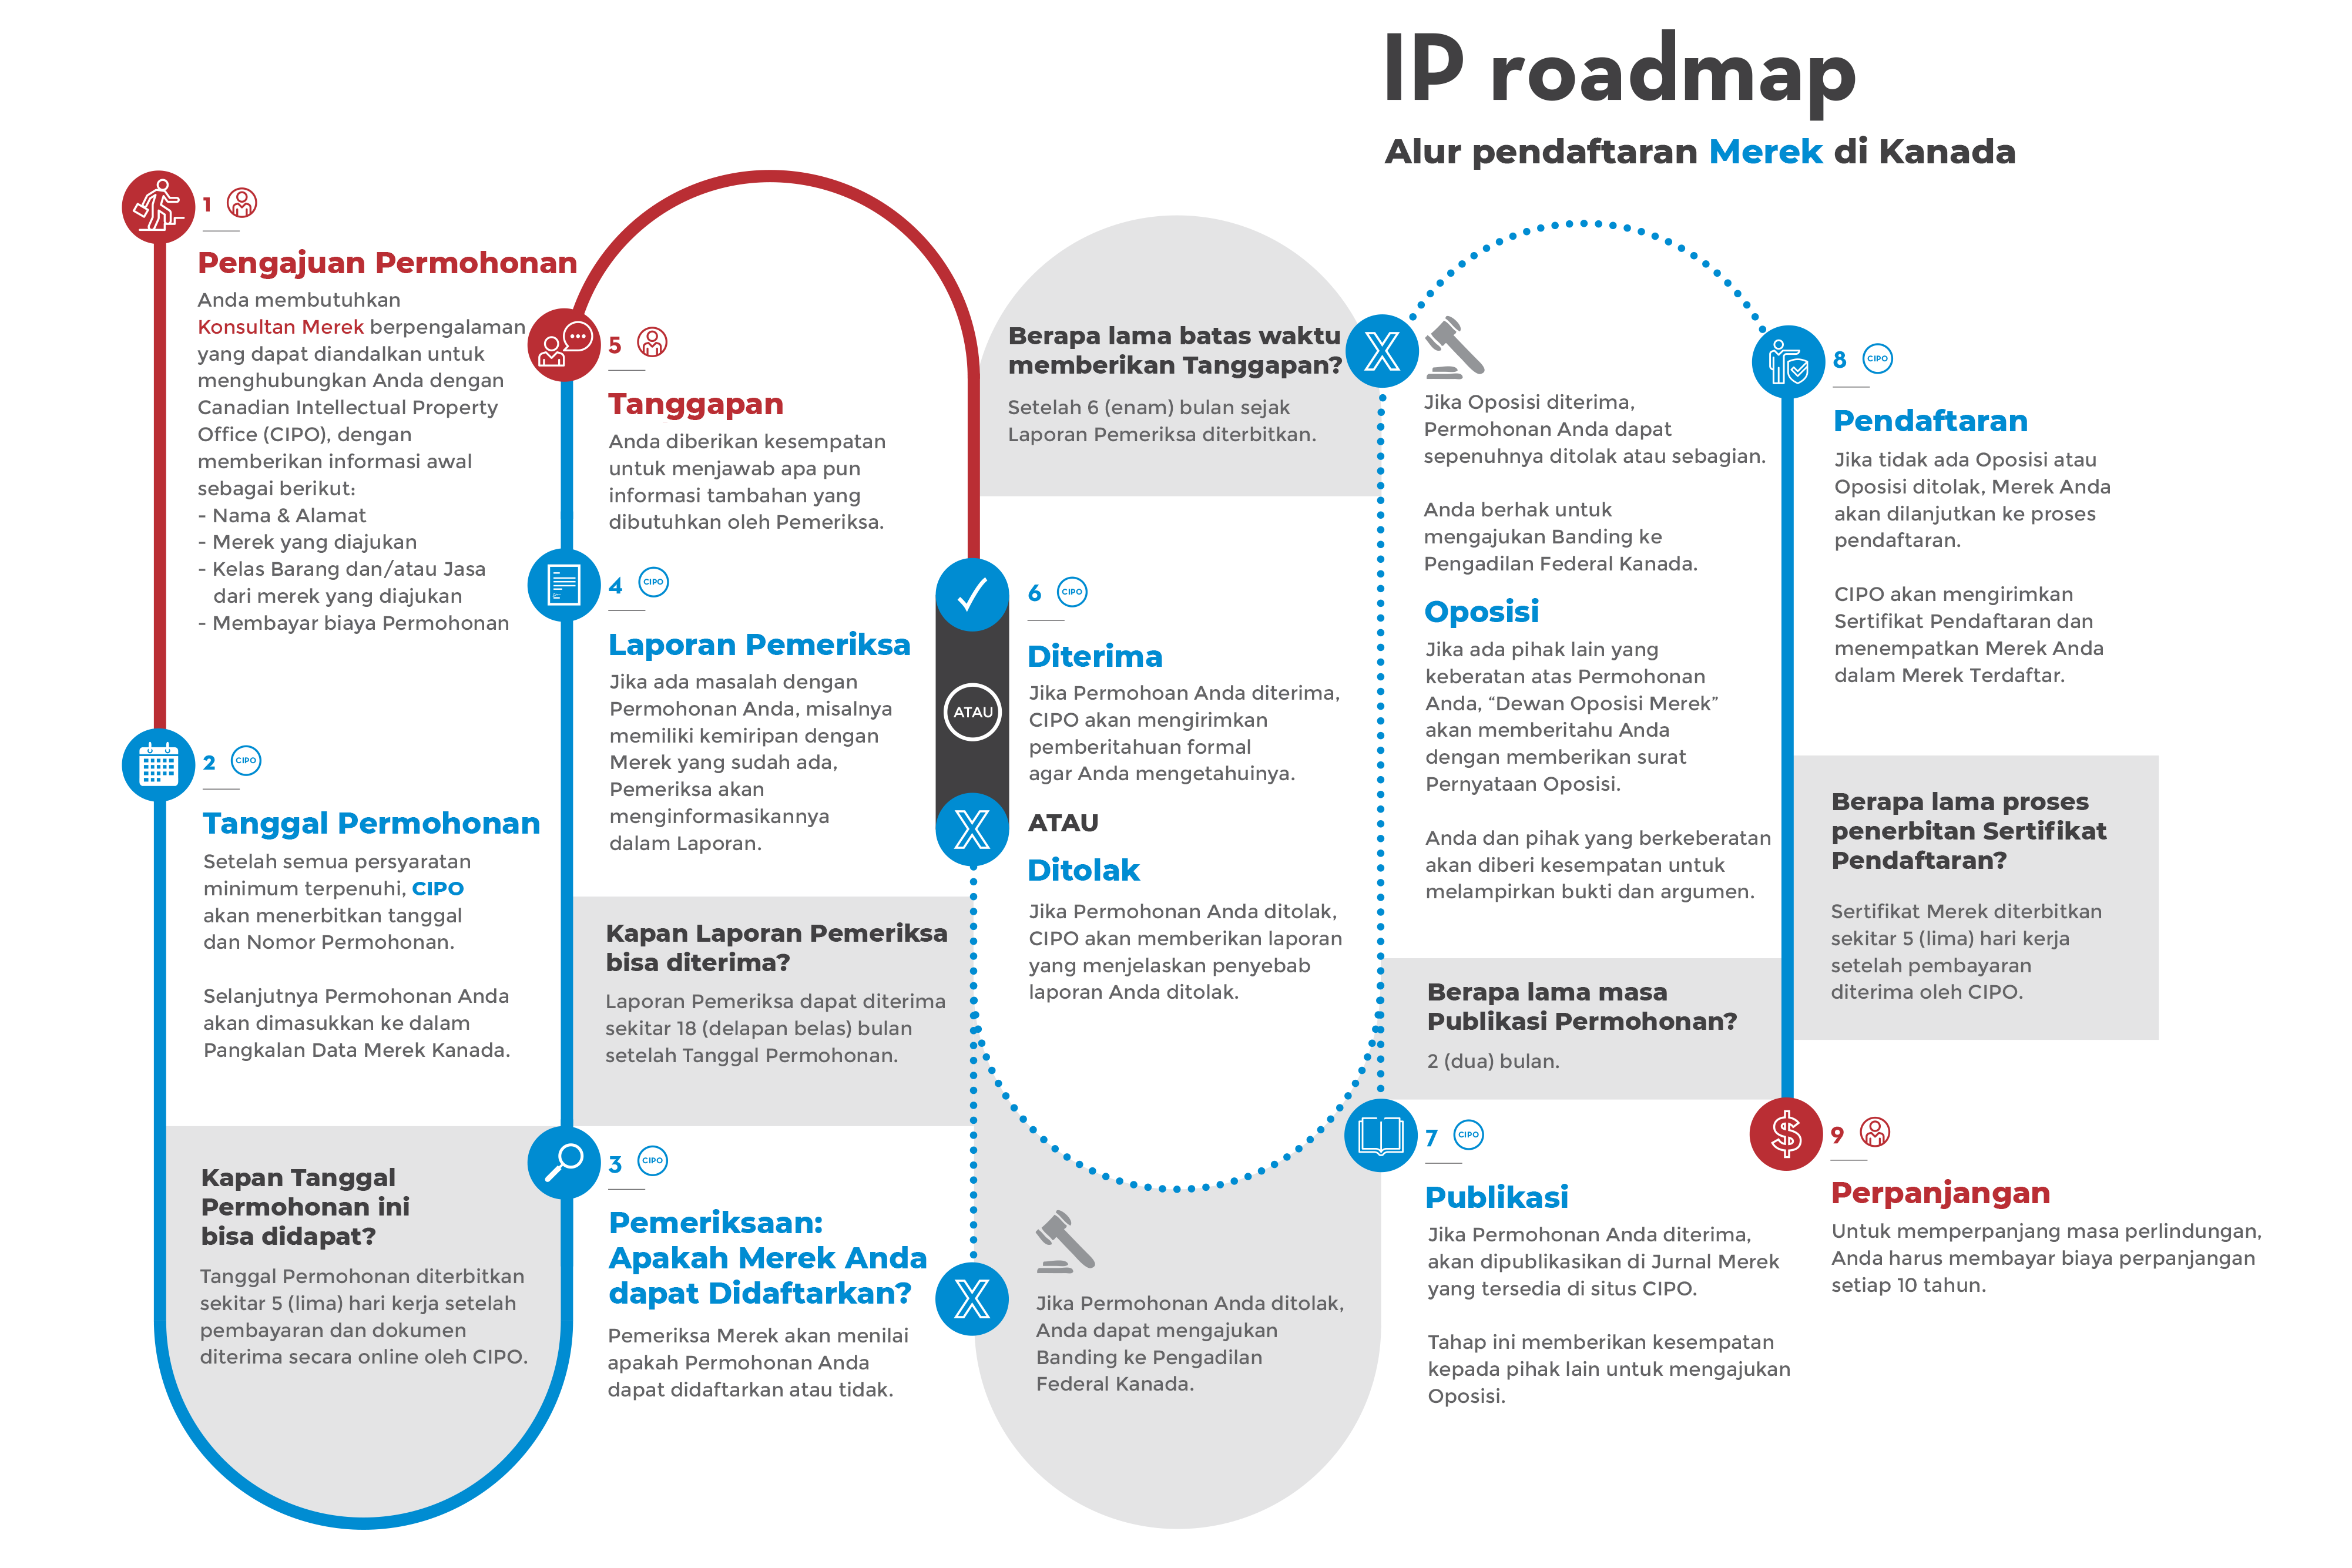 IP Roadmap Alur Pendaftaran Merek di Kanada - AFFA IPR